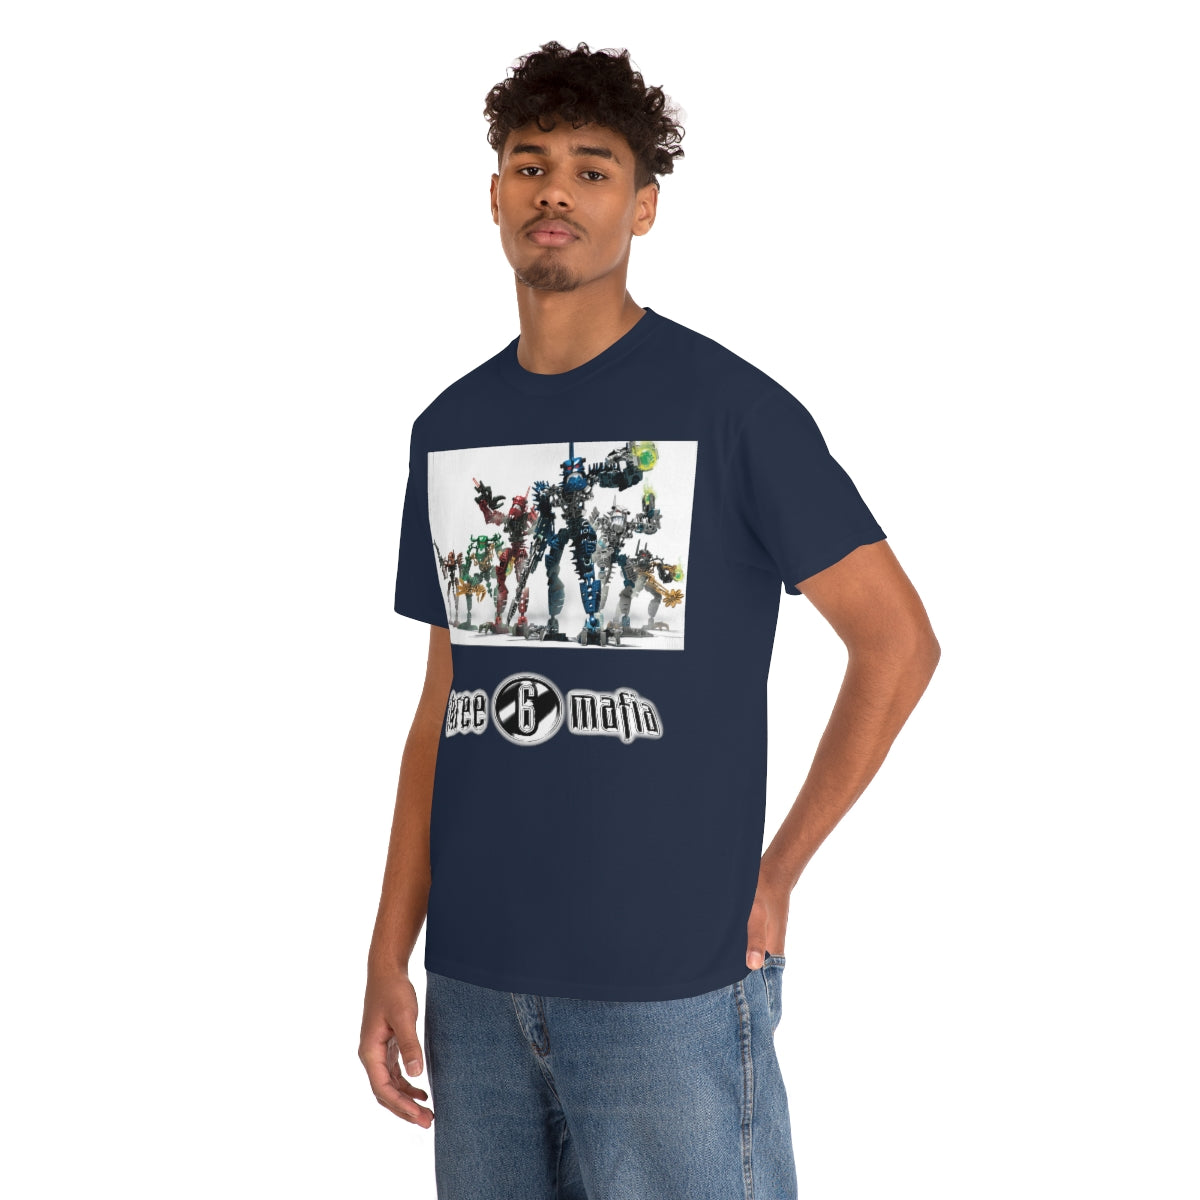 Bionicle 36 Shirt